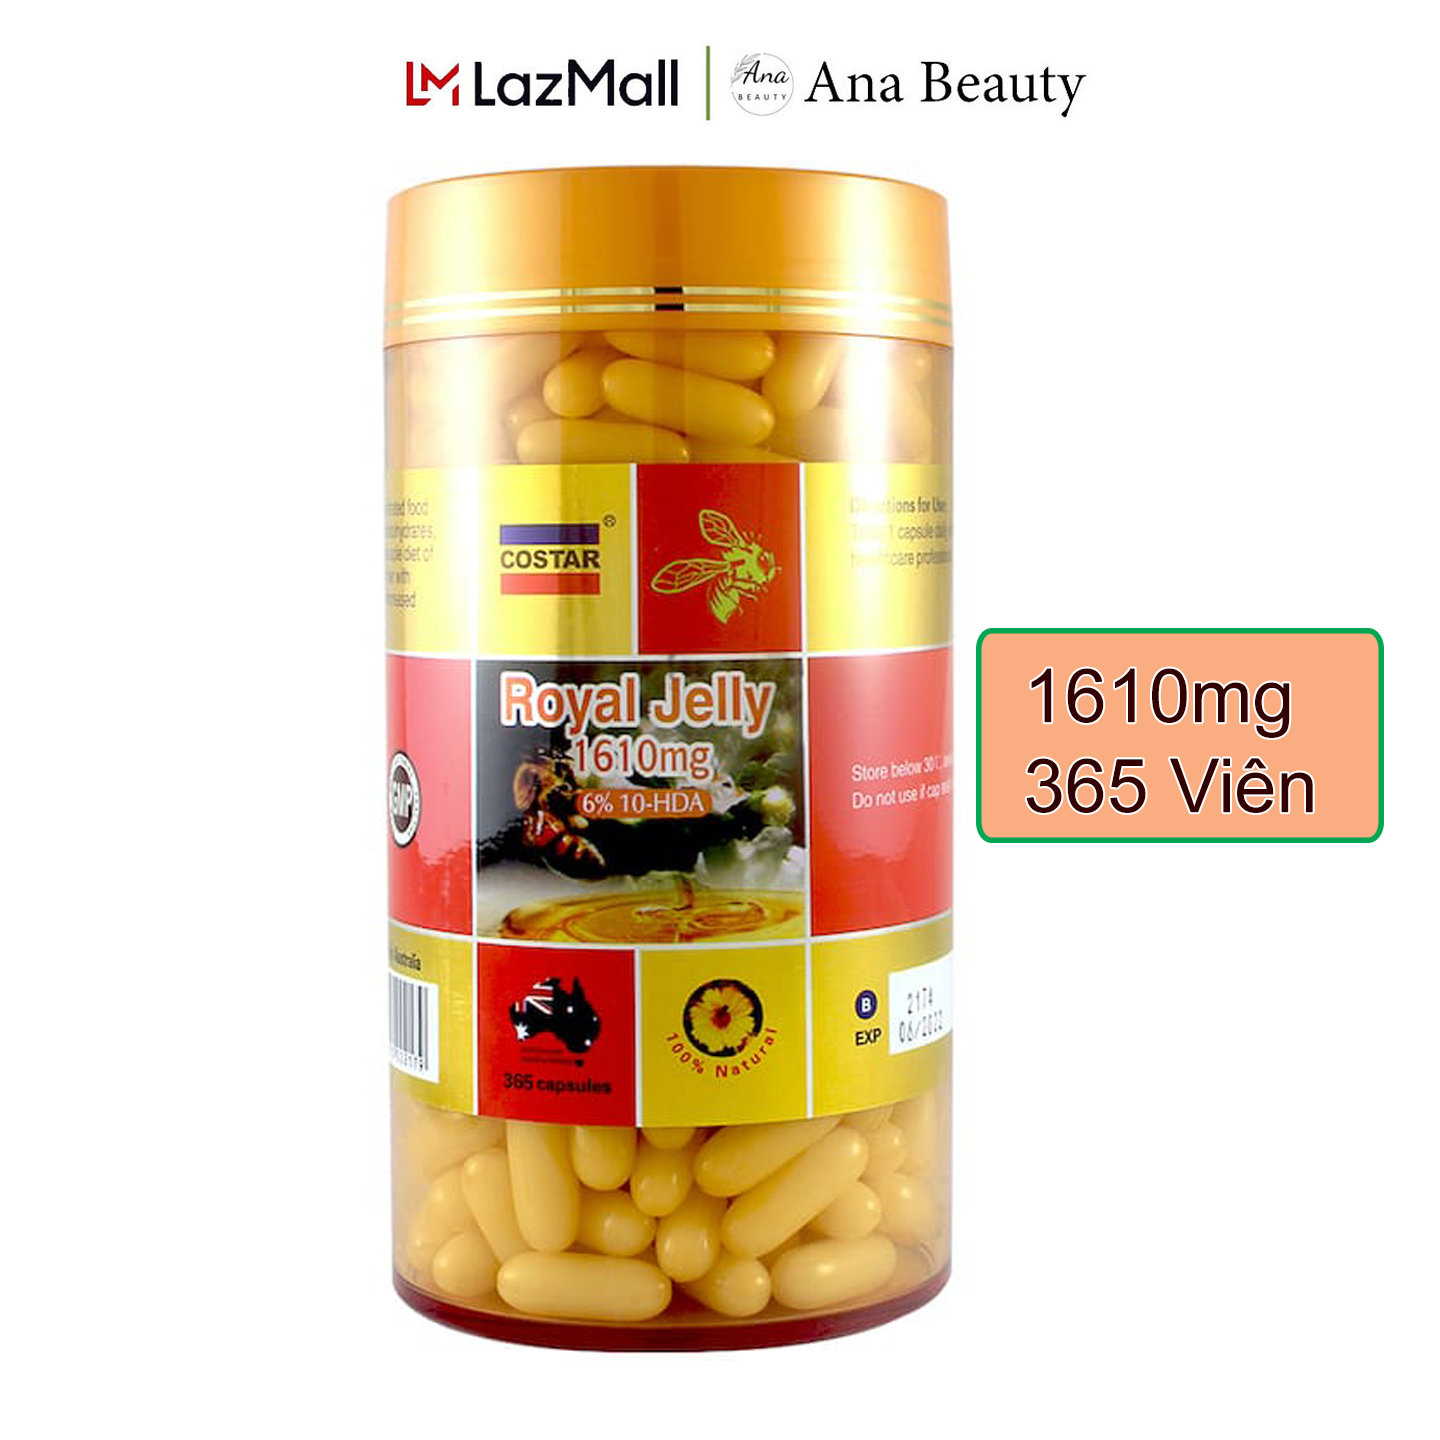 Sữa ong chúa Costar Royal Jelly 1610mg 6% 10-HDA Úc 365 viên hàm lượng